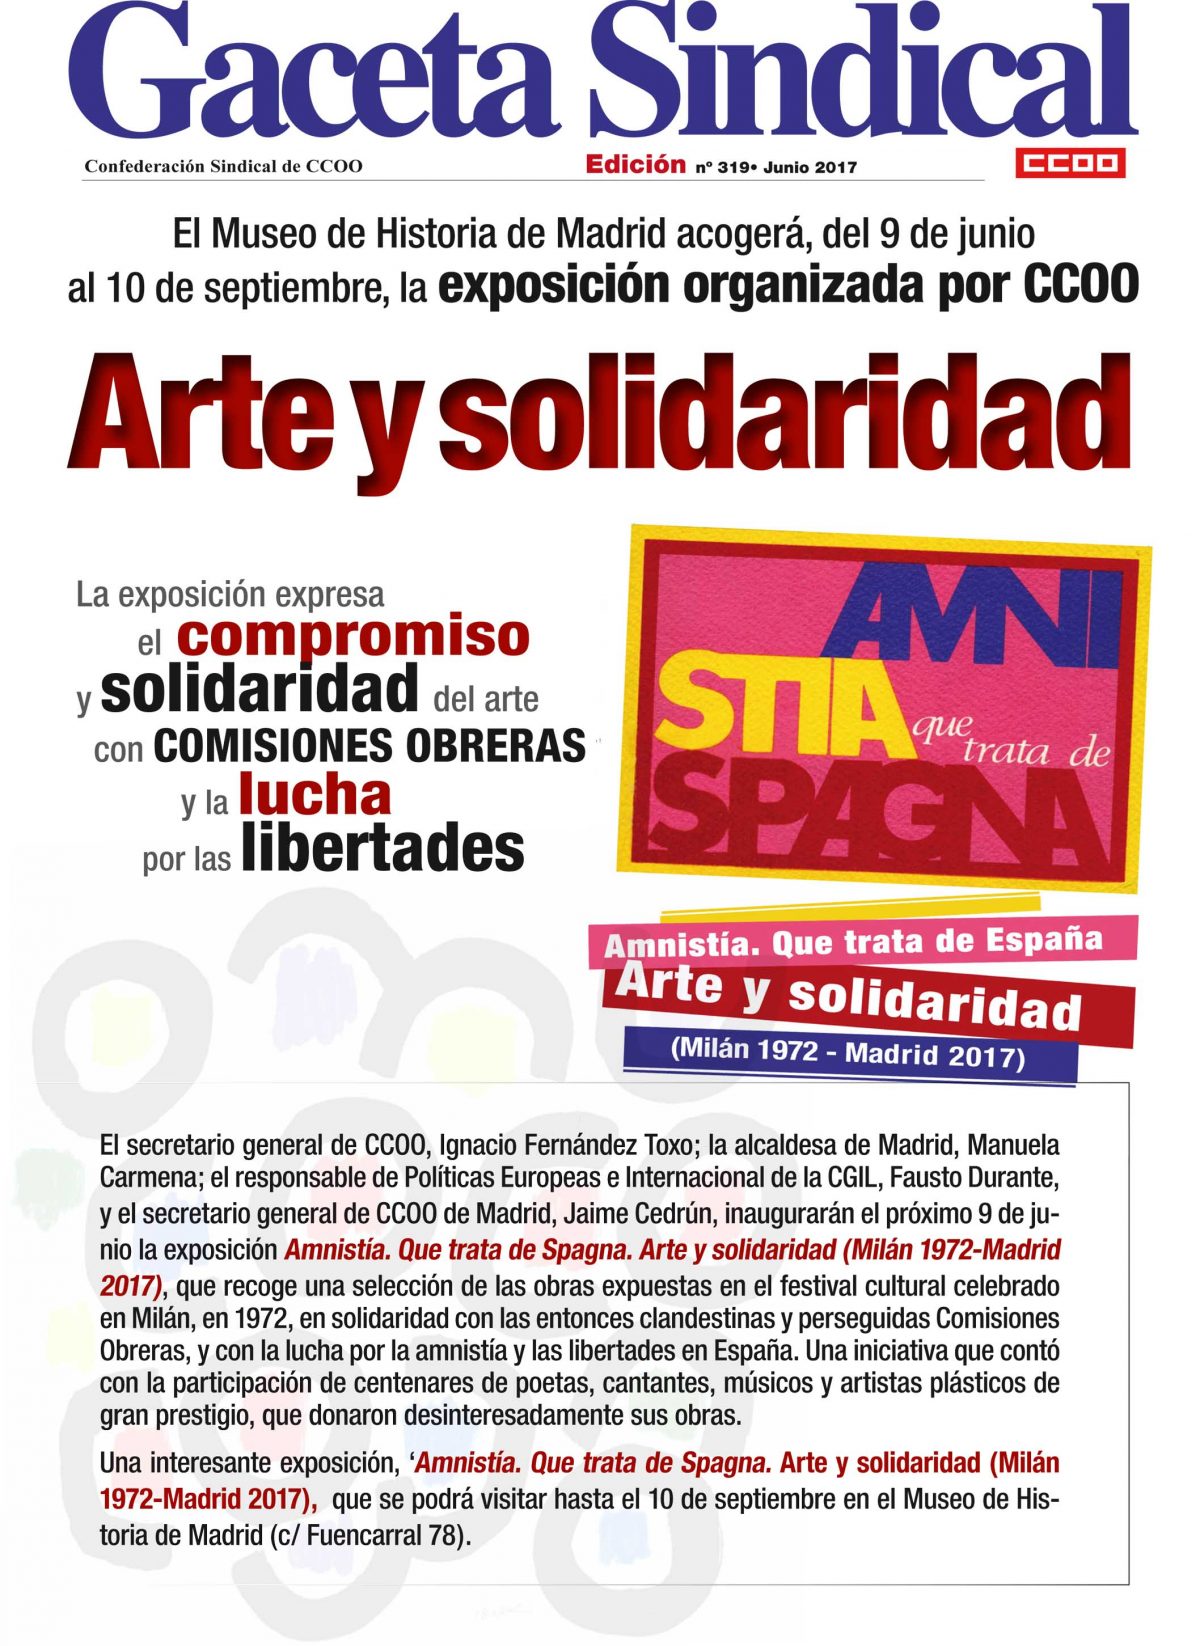 Amnista. Que trata de Spagna. Arte y solidaridad (Miln 1972-Madrid 2017)